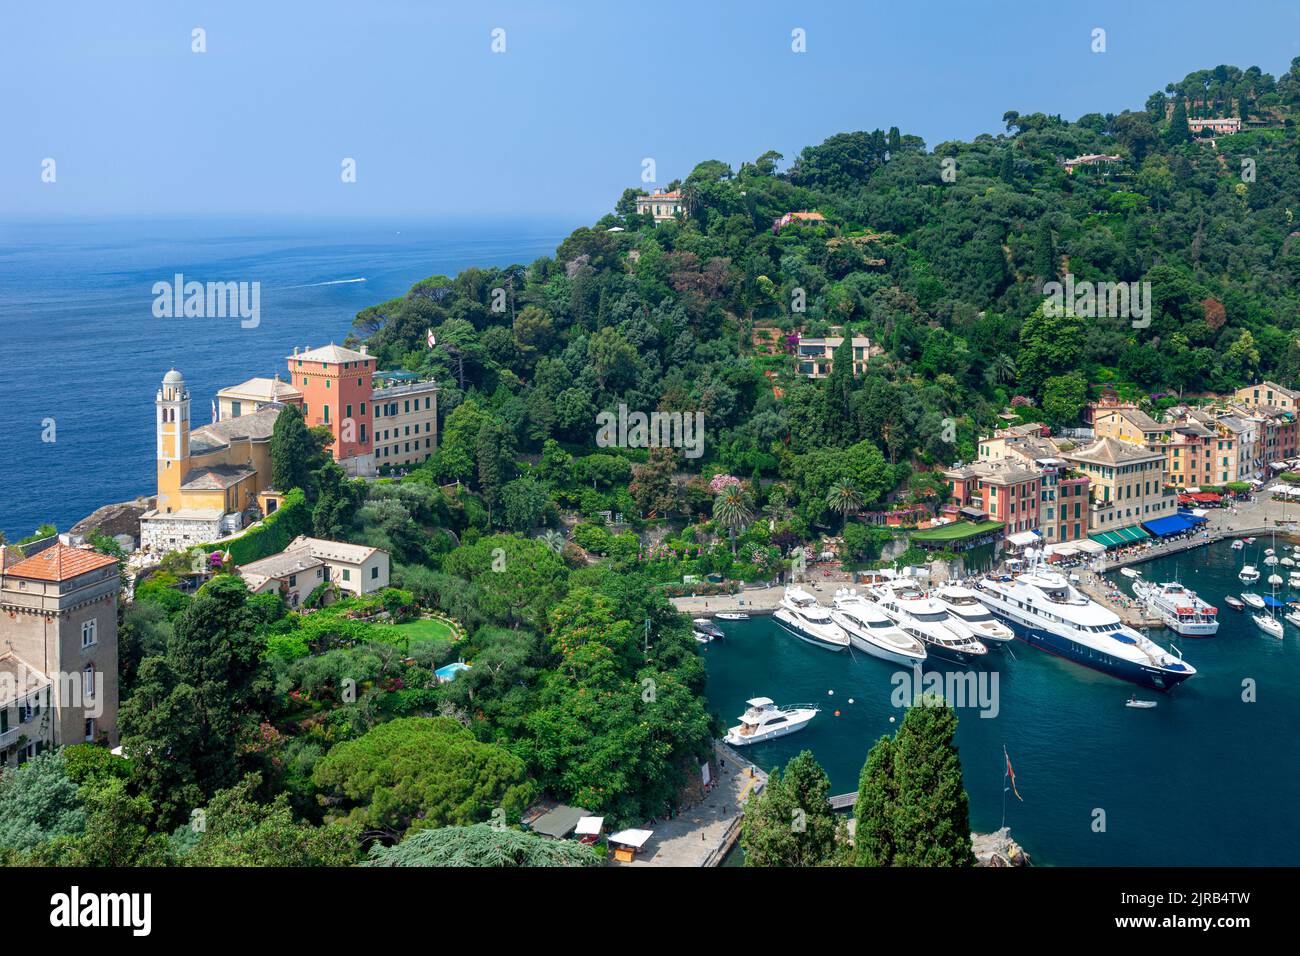 Chiesa San Giorgio, collines verdoyantes et bateaux de luxe amarrés dans la petite ville portuaire de Portofino, Ligurie, Italie Banque D'Images